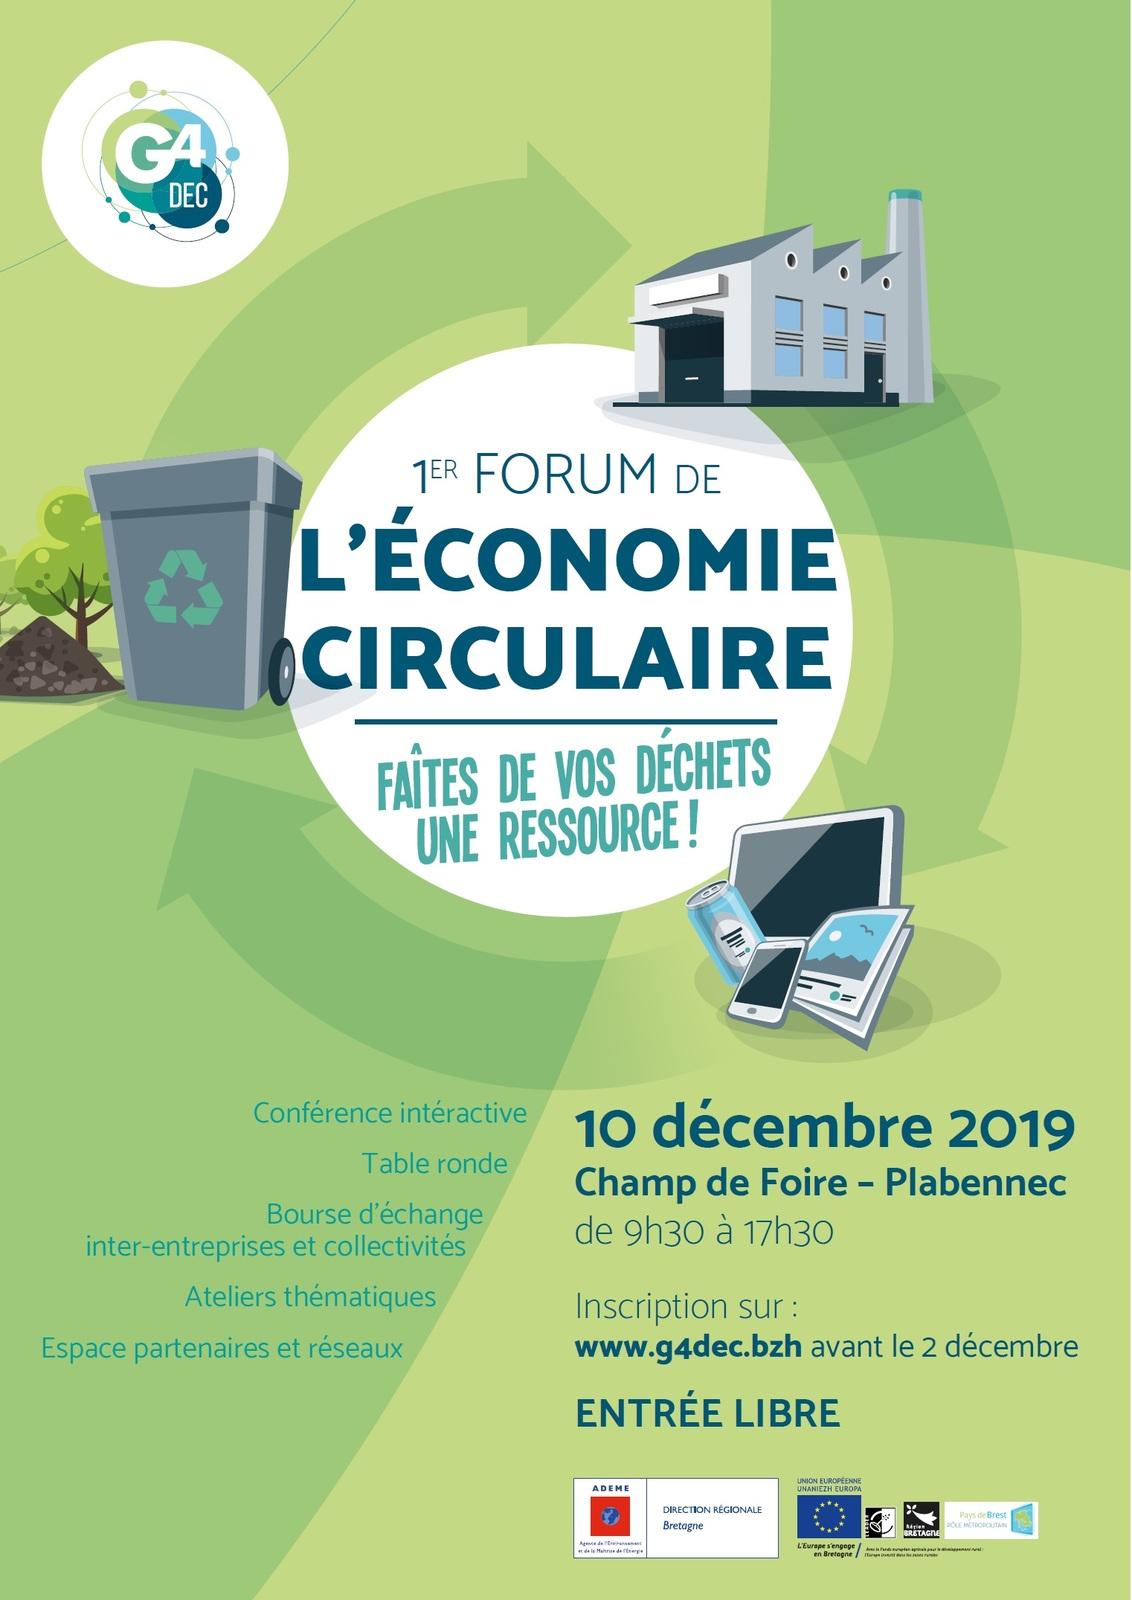 1er forum de l'économie circulaire